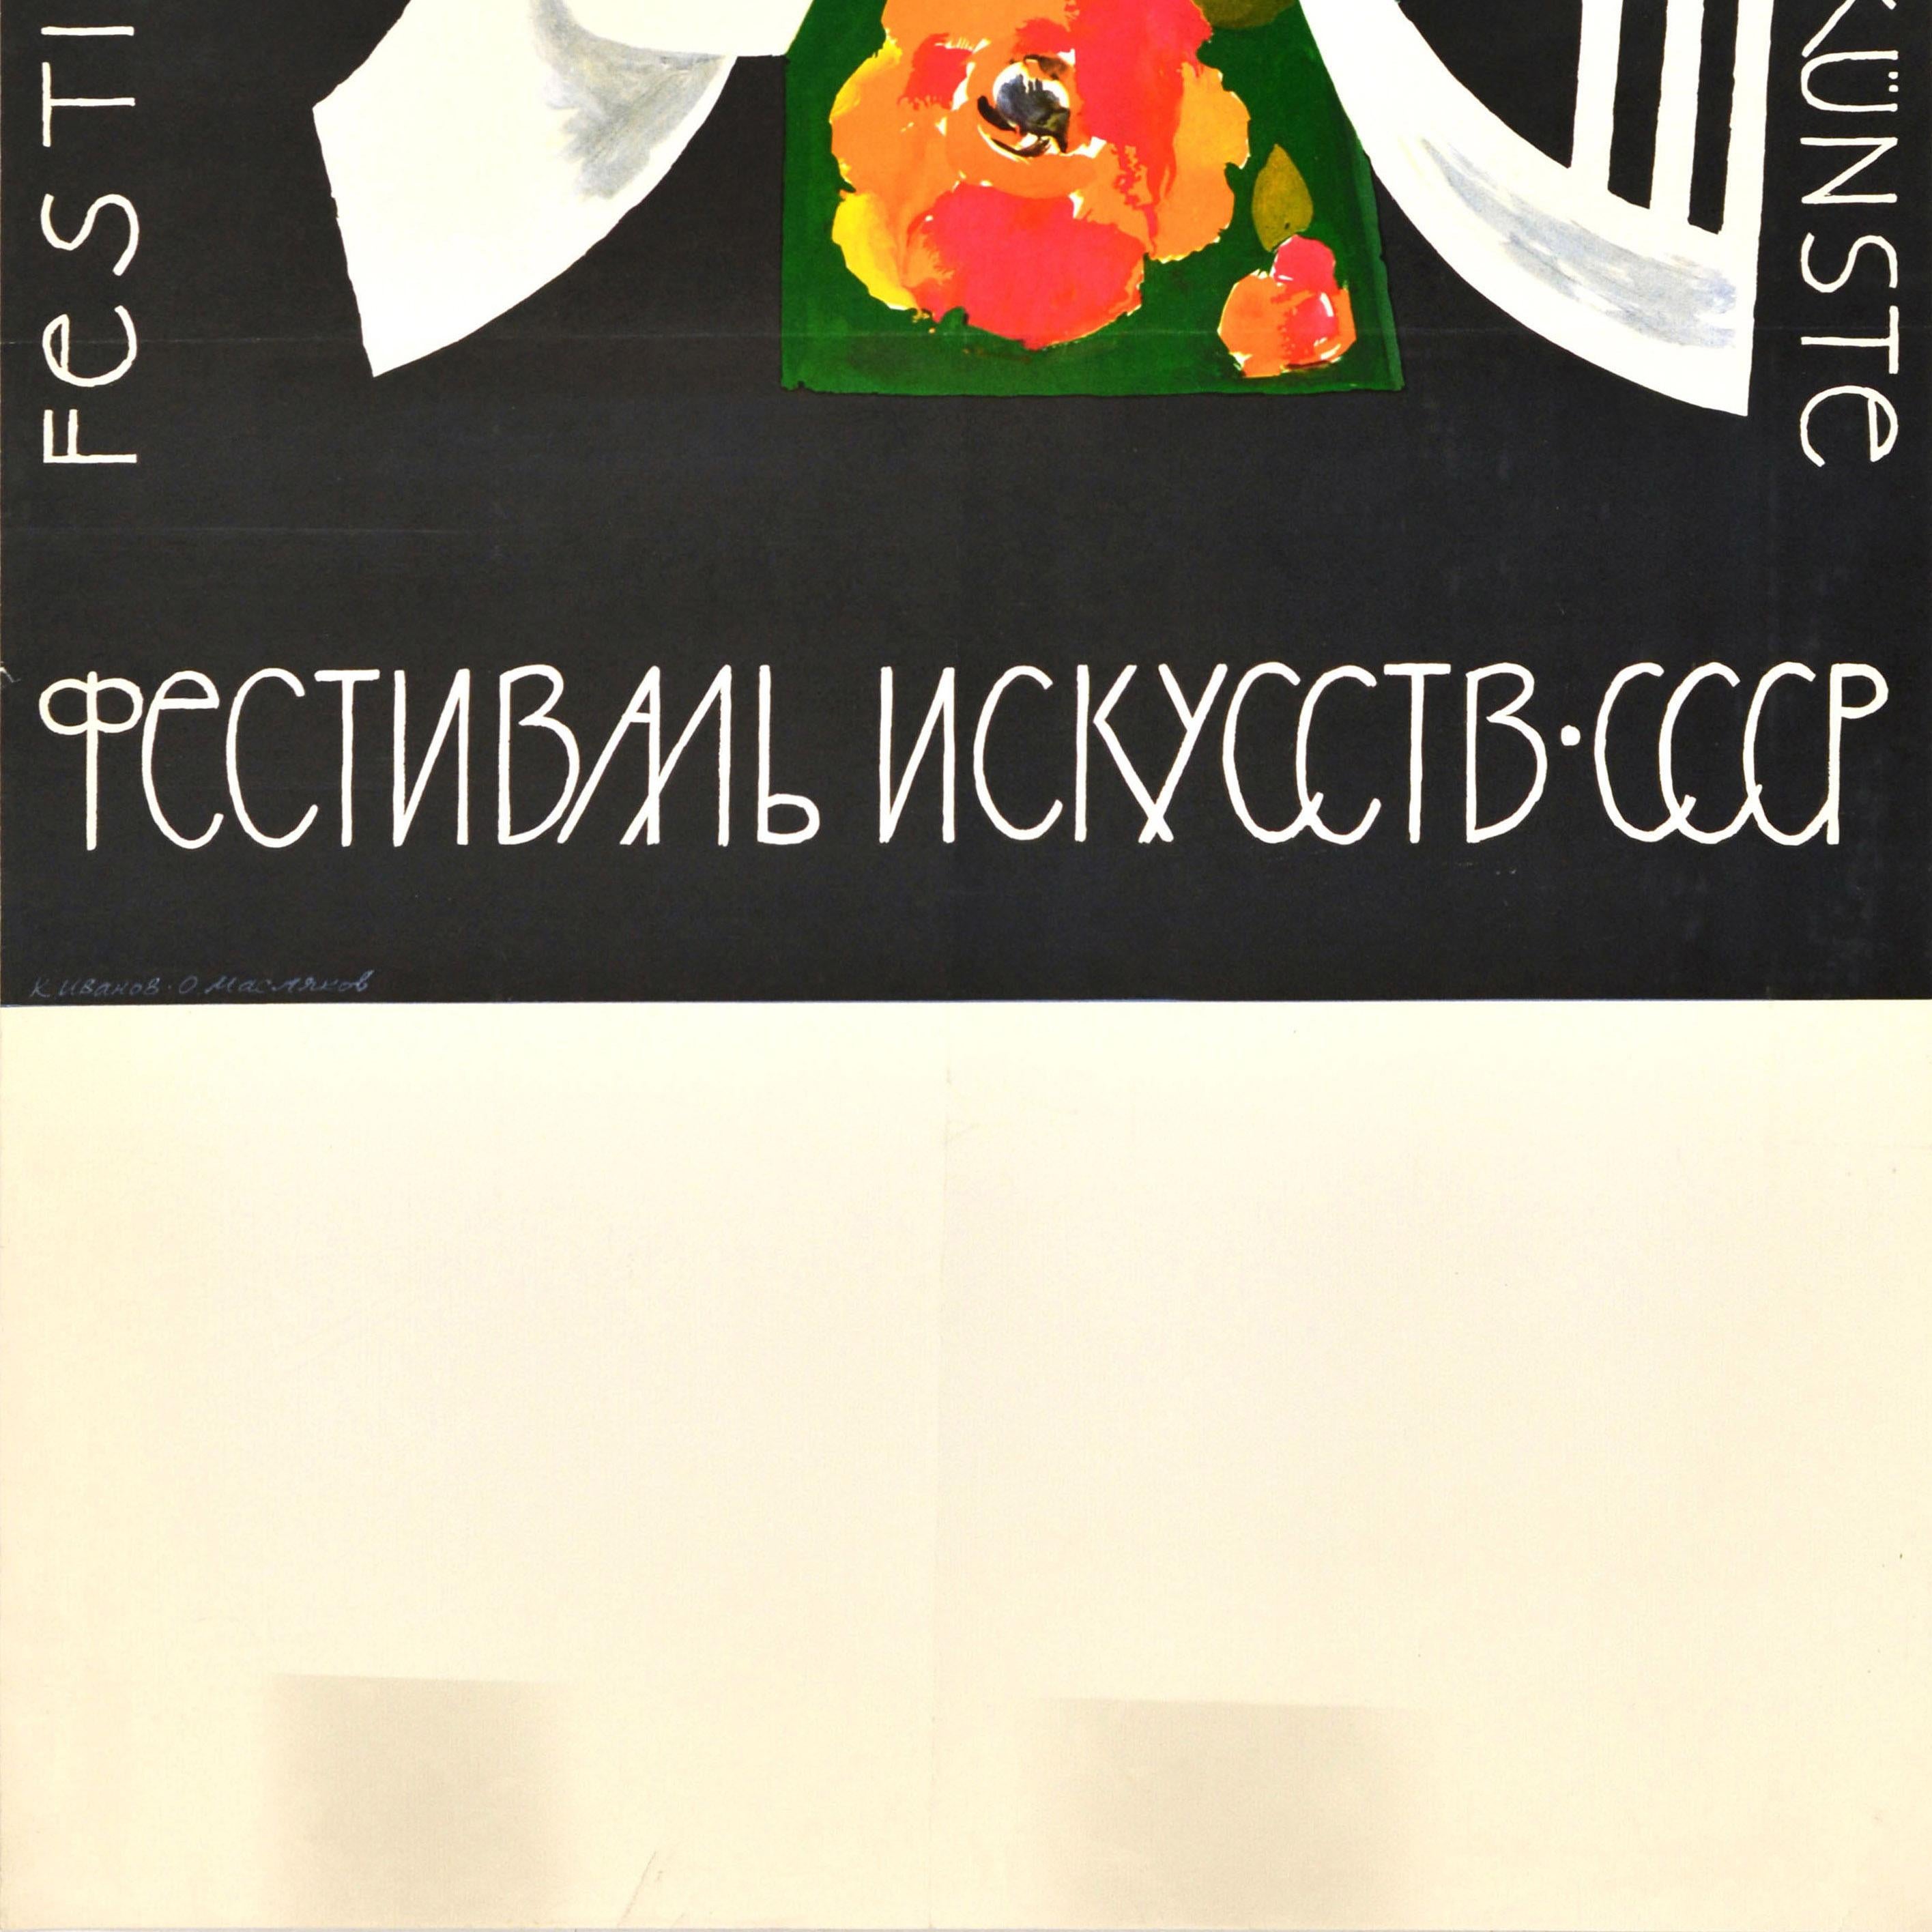 Originales sowjetisches Werbeplakat für das Festival der Künste Festival des Artes Festival der Kunste Фестиваль искусств CCCP UdSSR mit englischem, französischem, deutschem und russischem Text in weißer Schrift um ein farbenfrohes Bild, das eine